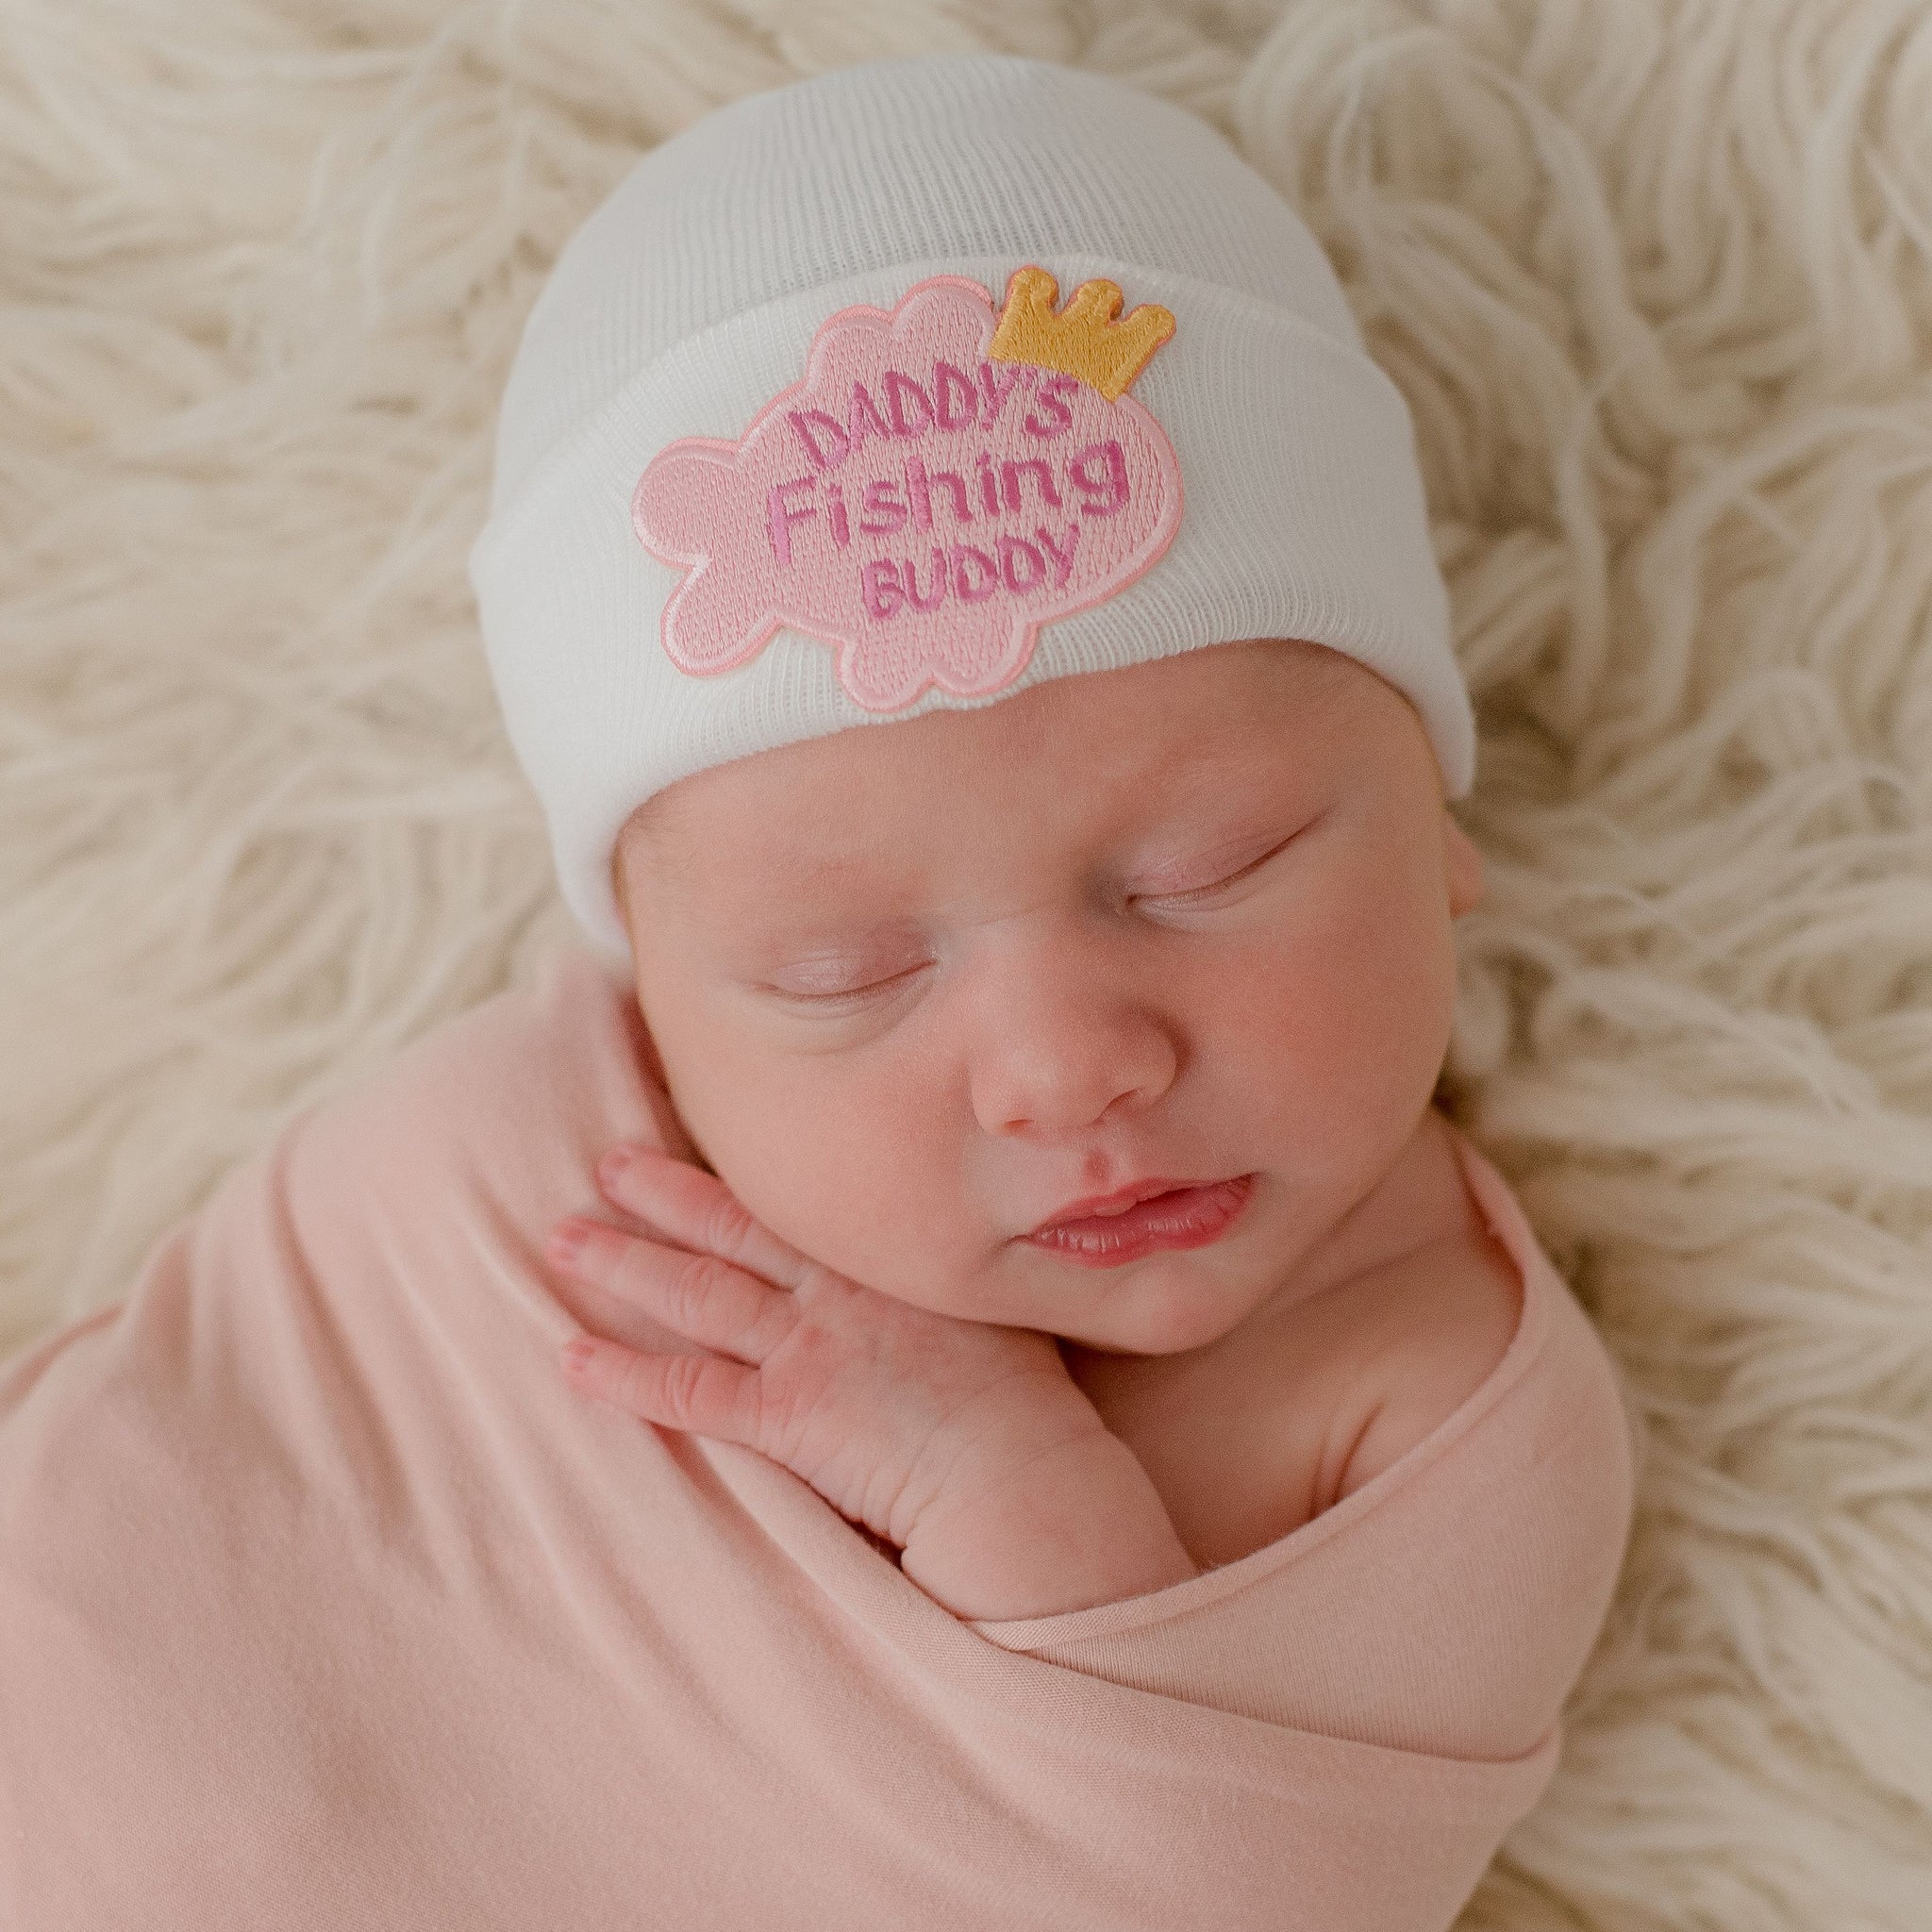 Newborn Girl Tagged daddys fishing buddy hat - ilybean nursery beanies